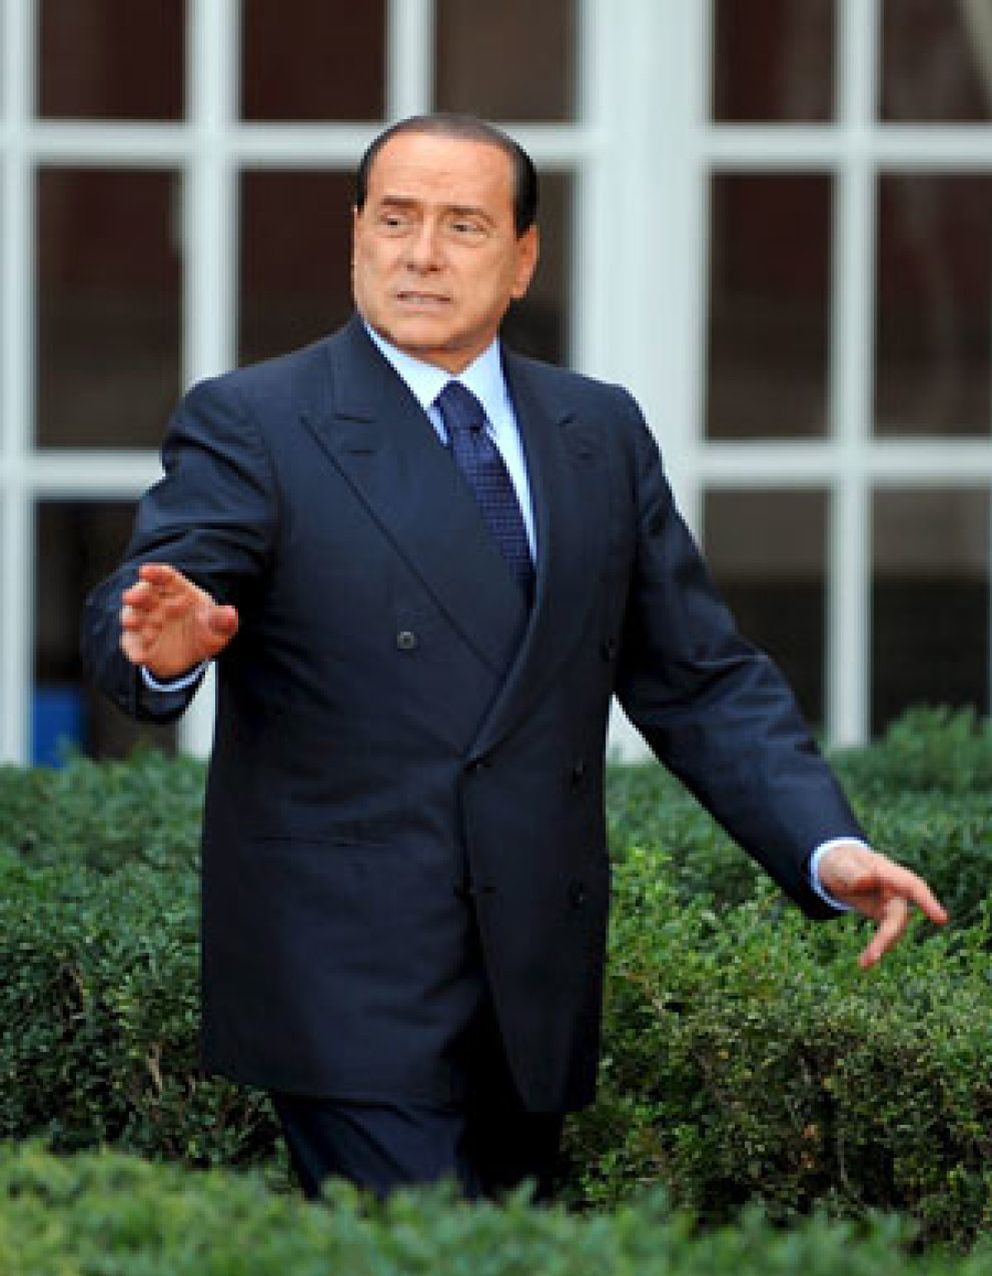 Foto: L'Espresso publica nuevas conversaciones entre Berlusconi y D'Addario